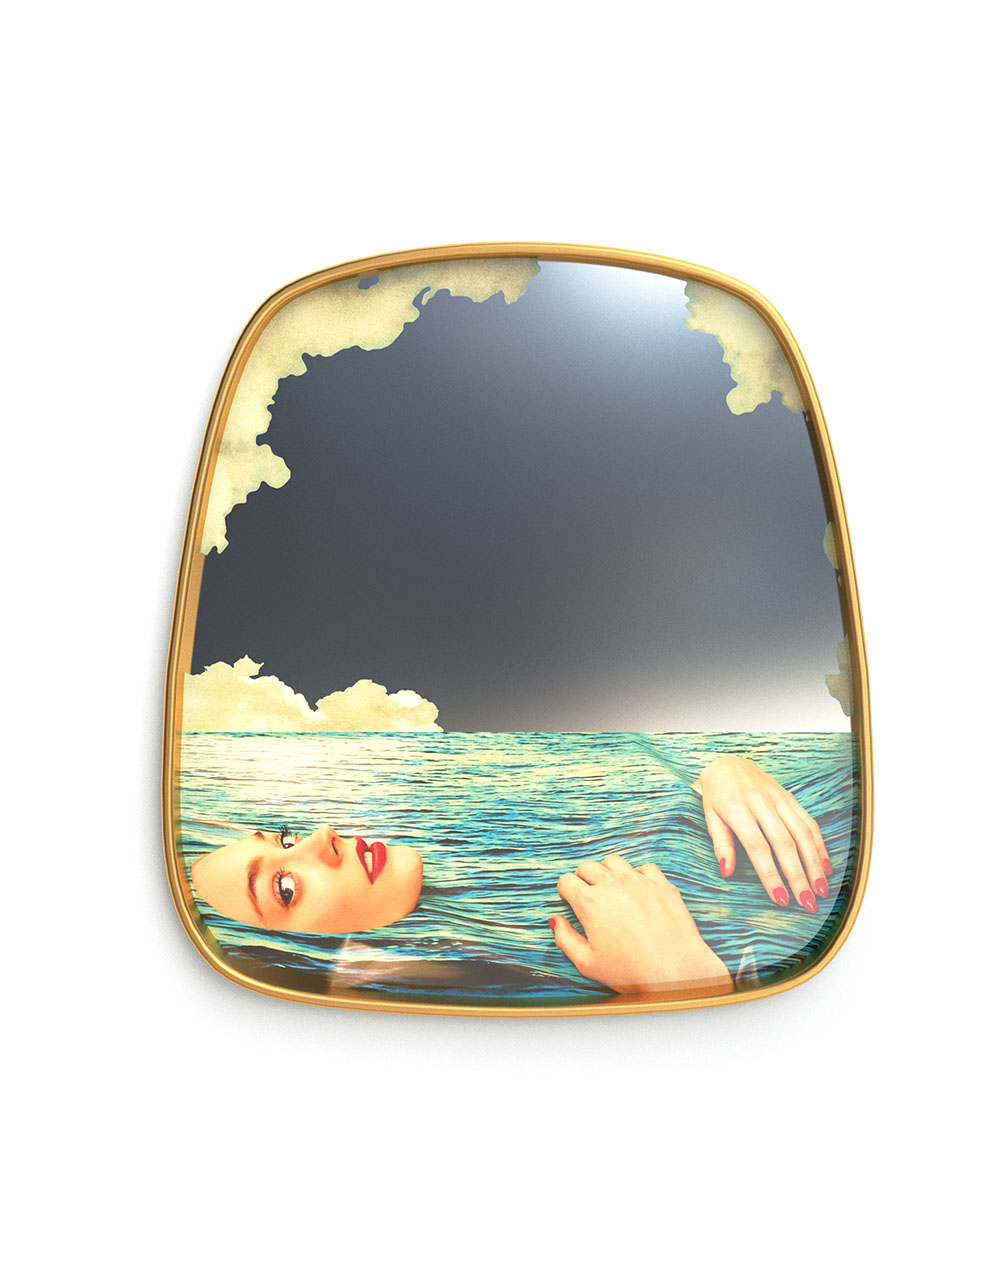 Gold mirror sea girl